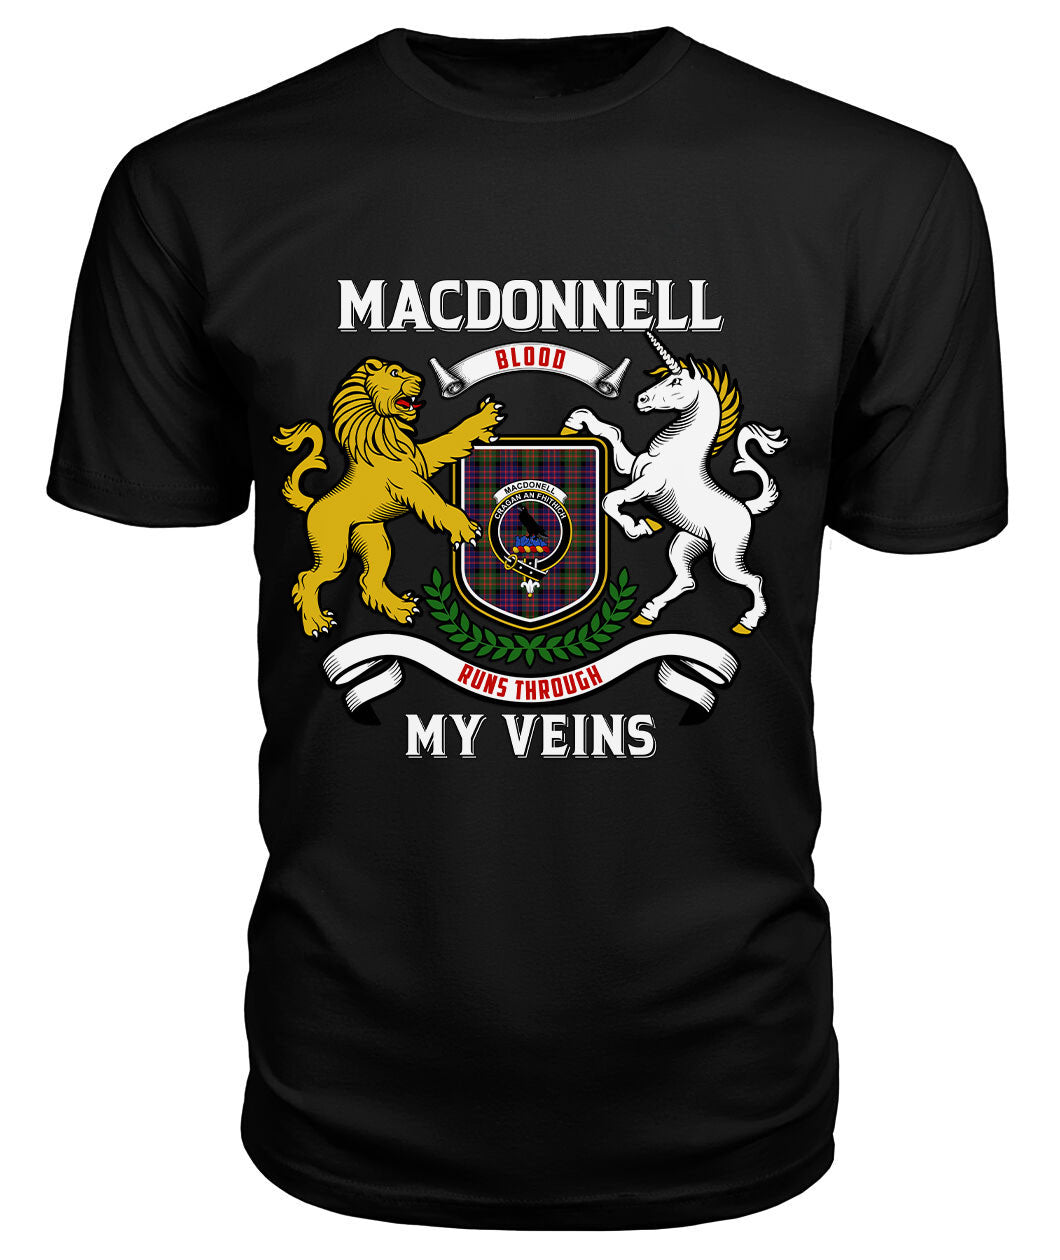 MacDonnell of Glengarry Modern Tartan Crest 2D T-shirt - Blood Runs Through My Veins Style